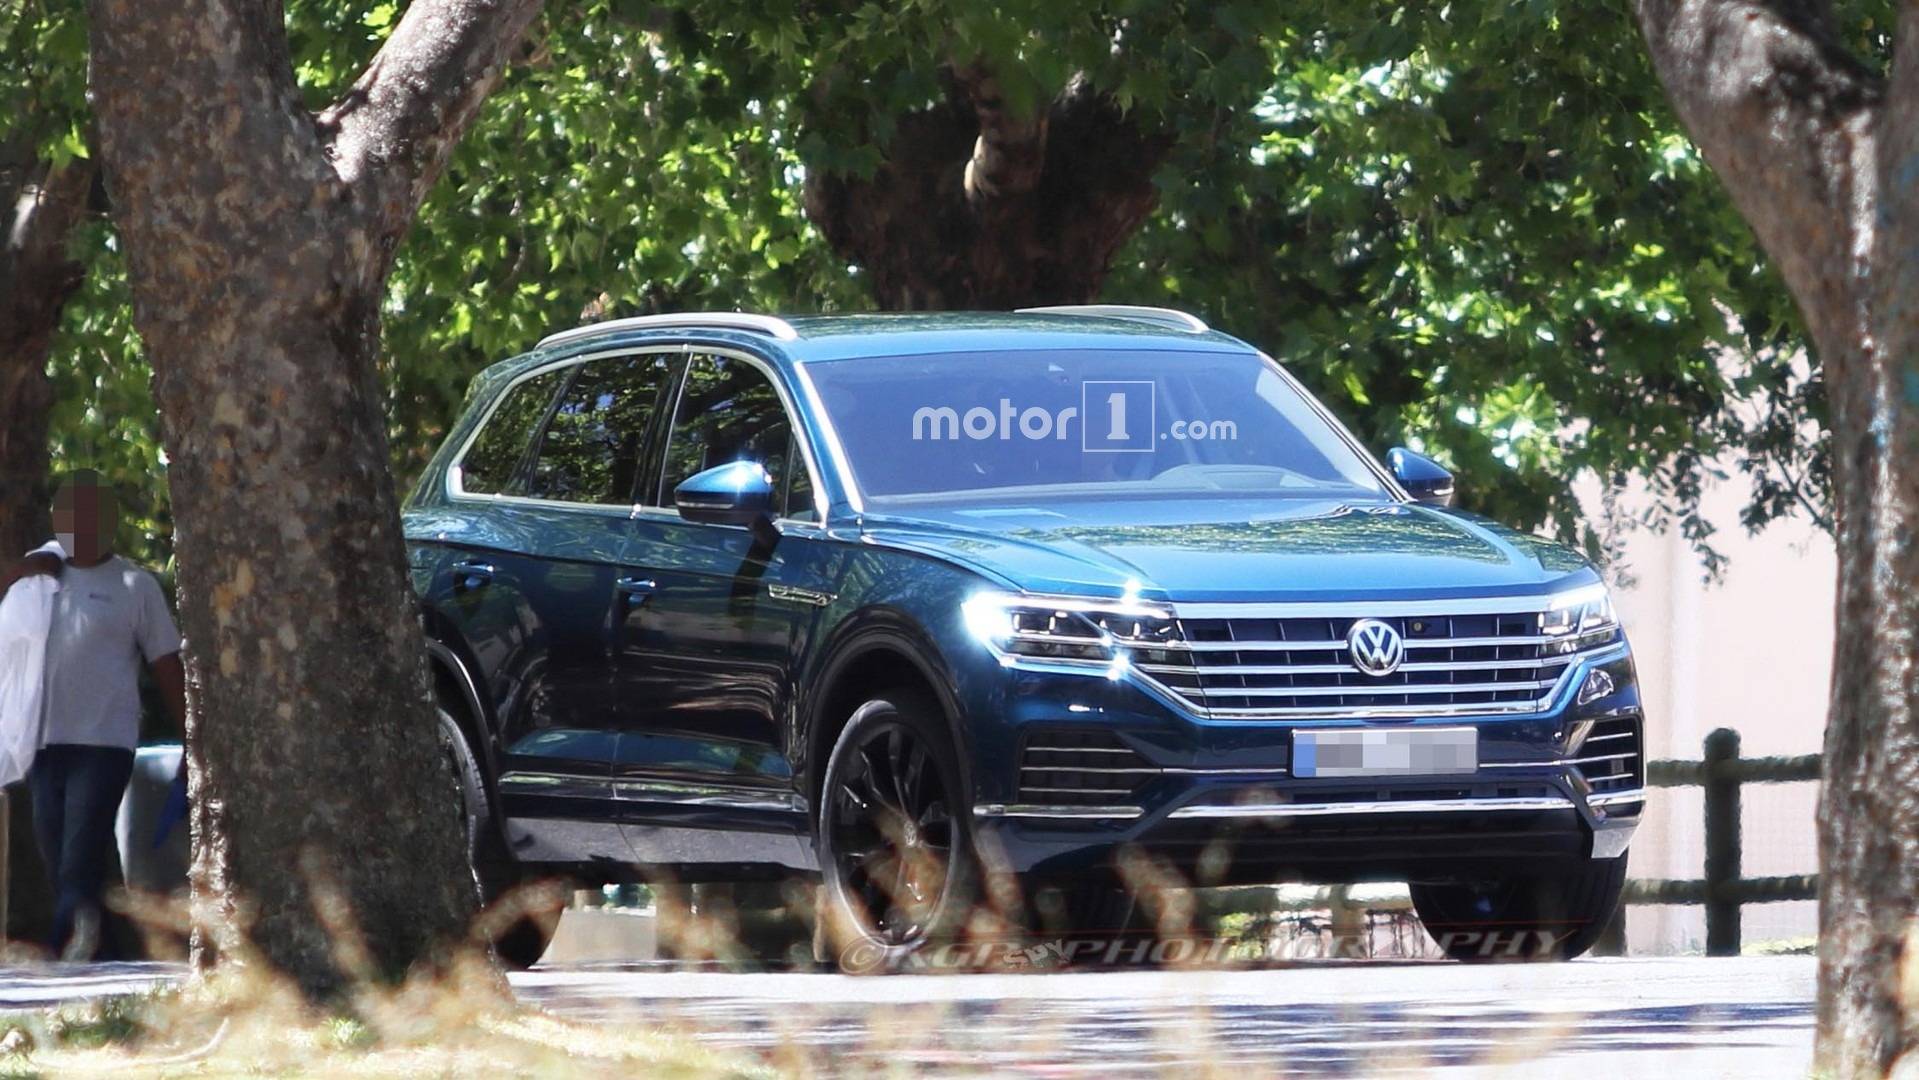 2019 Volkswagen Touareg kamuflajsız olarak görüntülendi